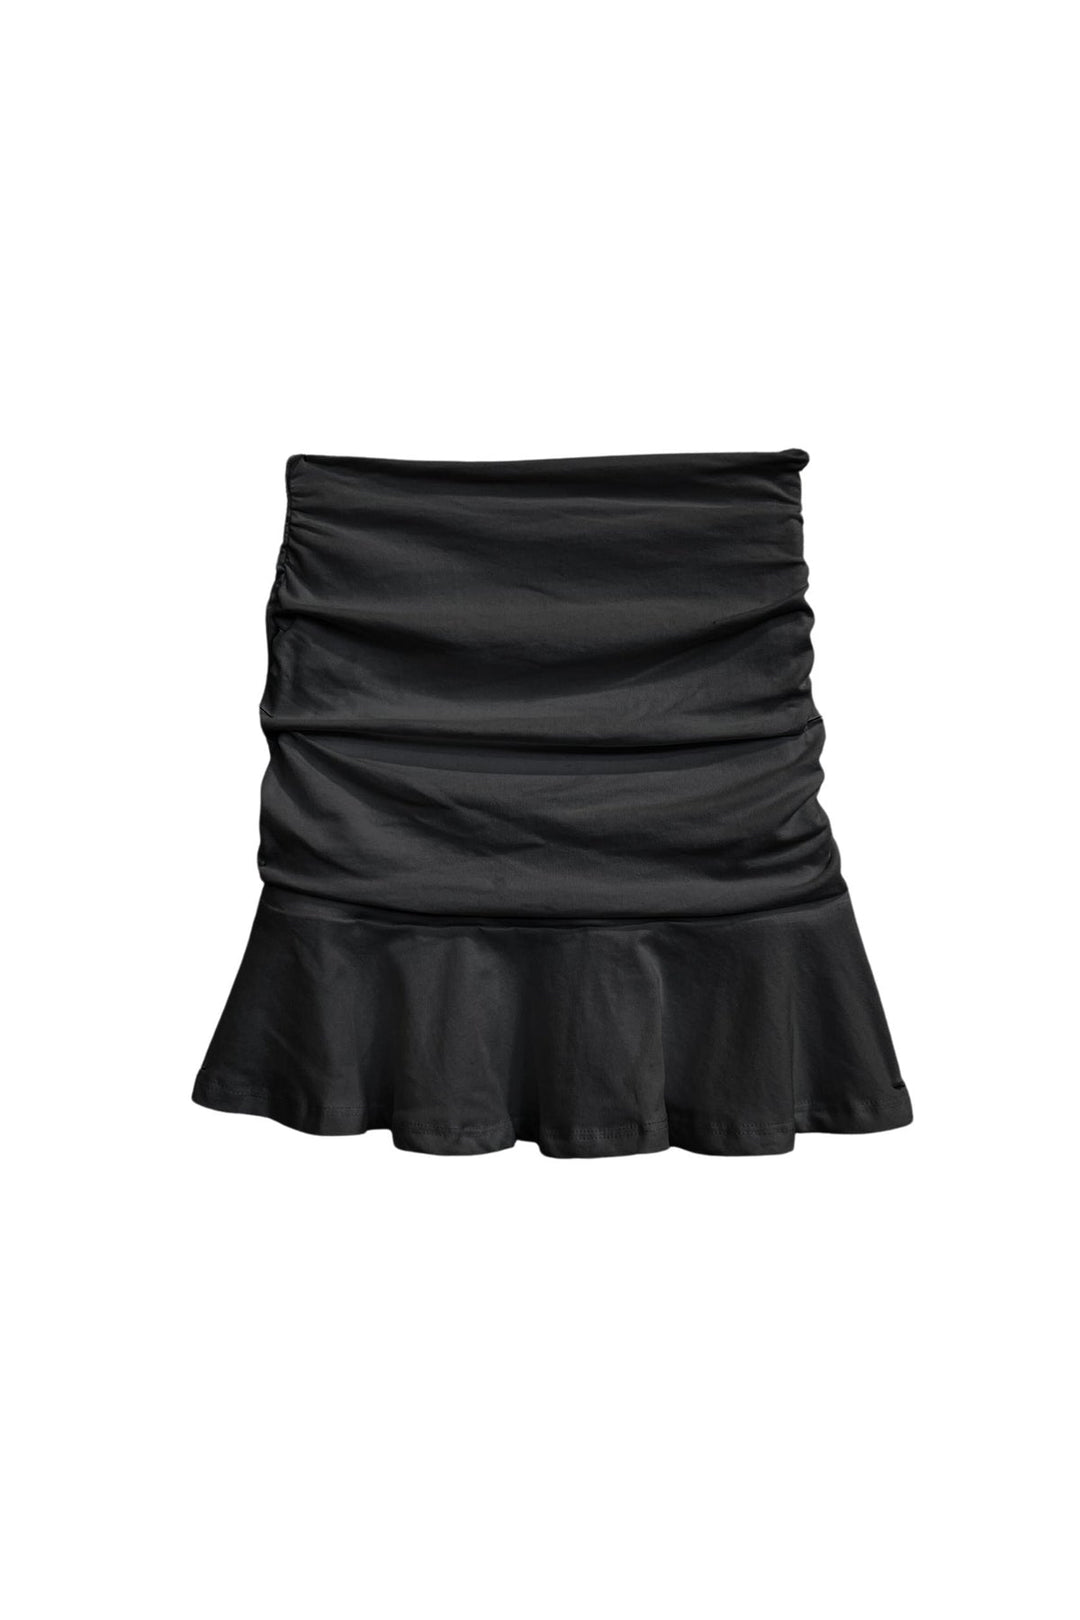 Aspen Skirt